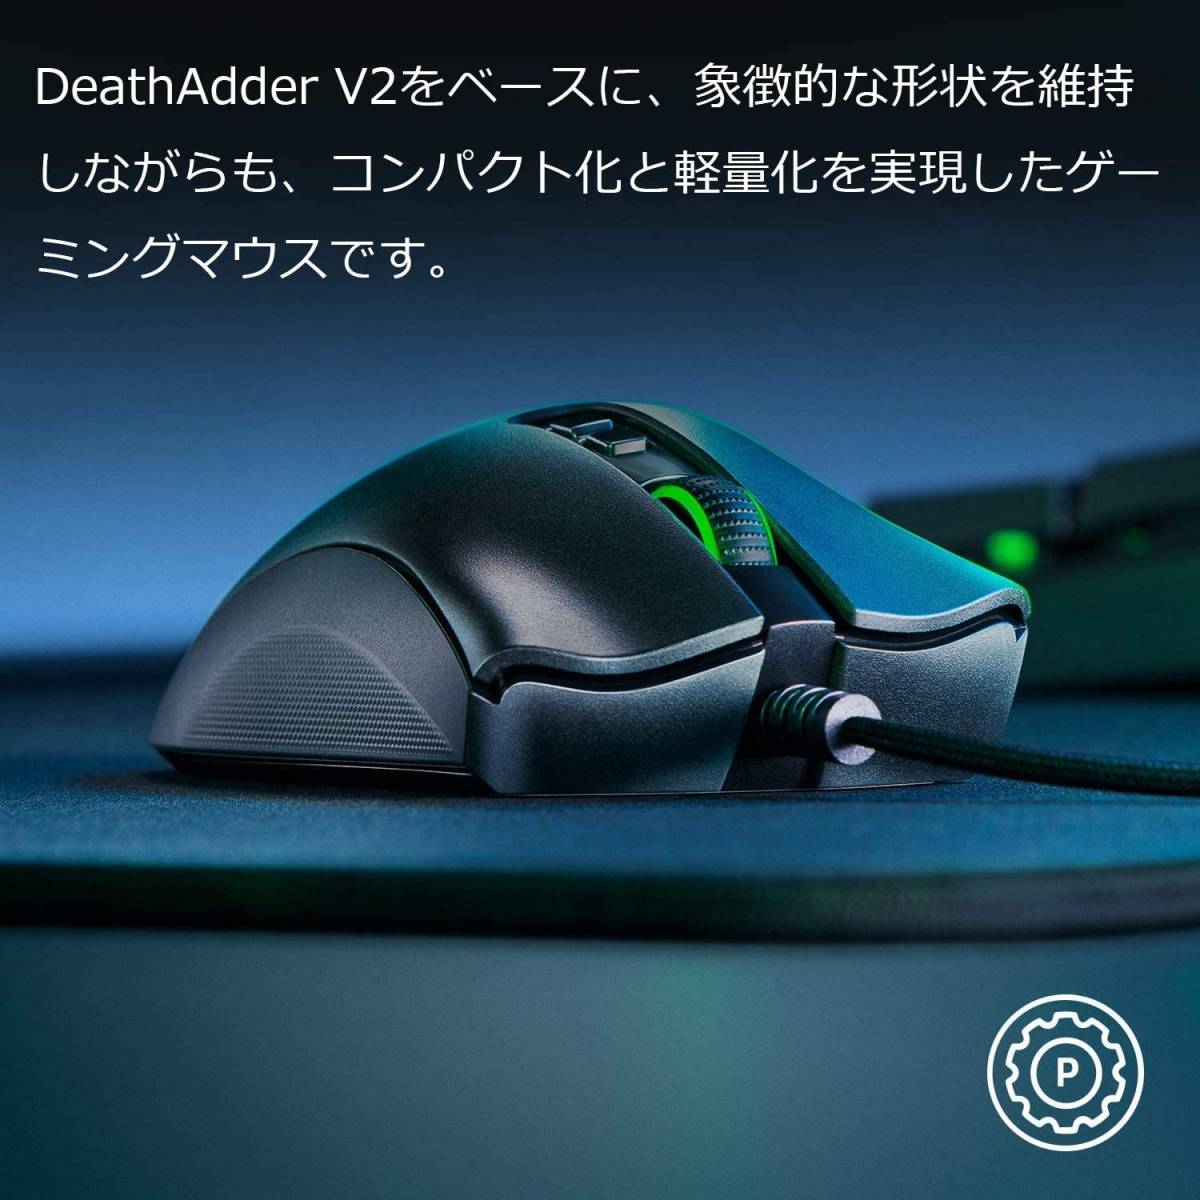 [ новый товар ]Razer DeathAdder V2 Minige-ming мышь 